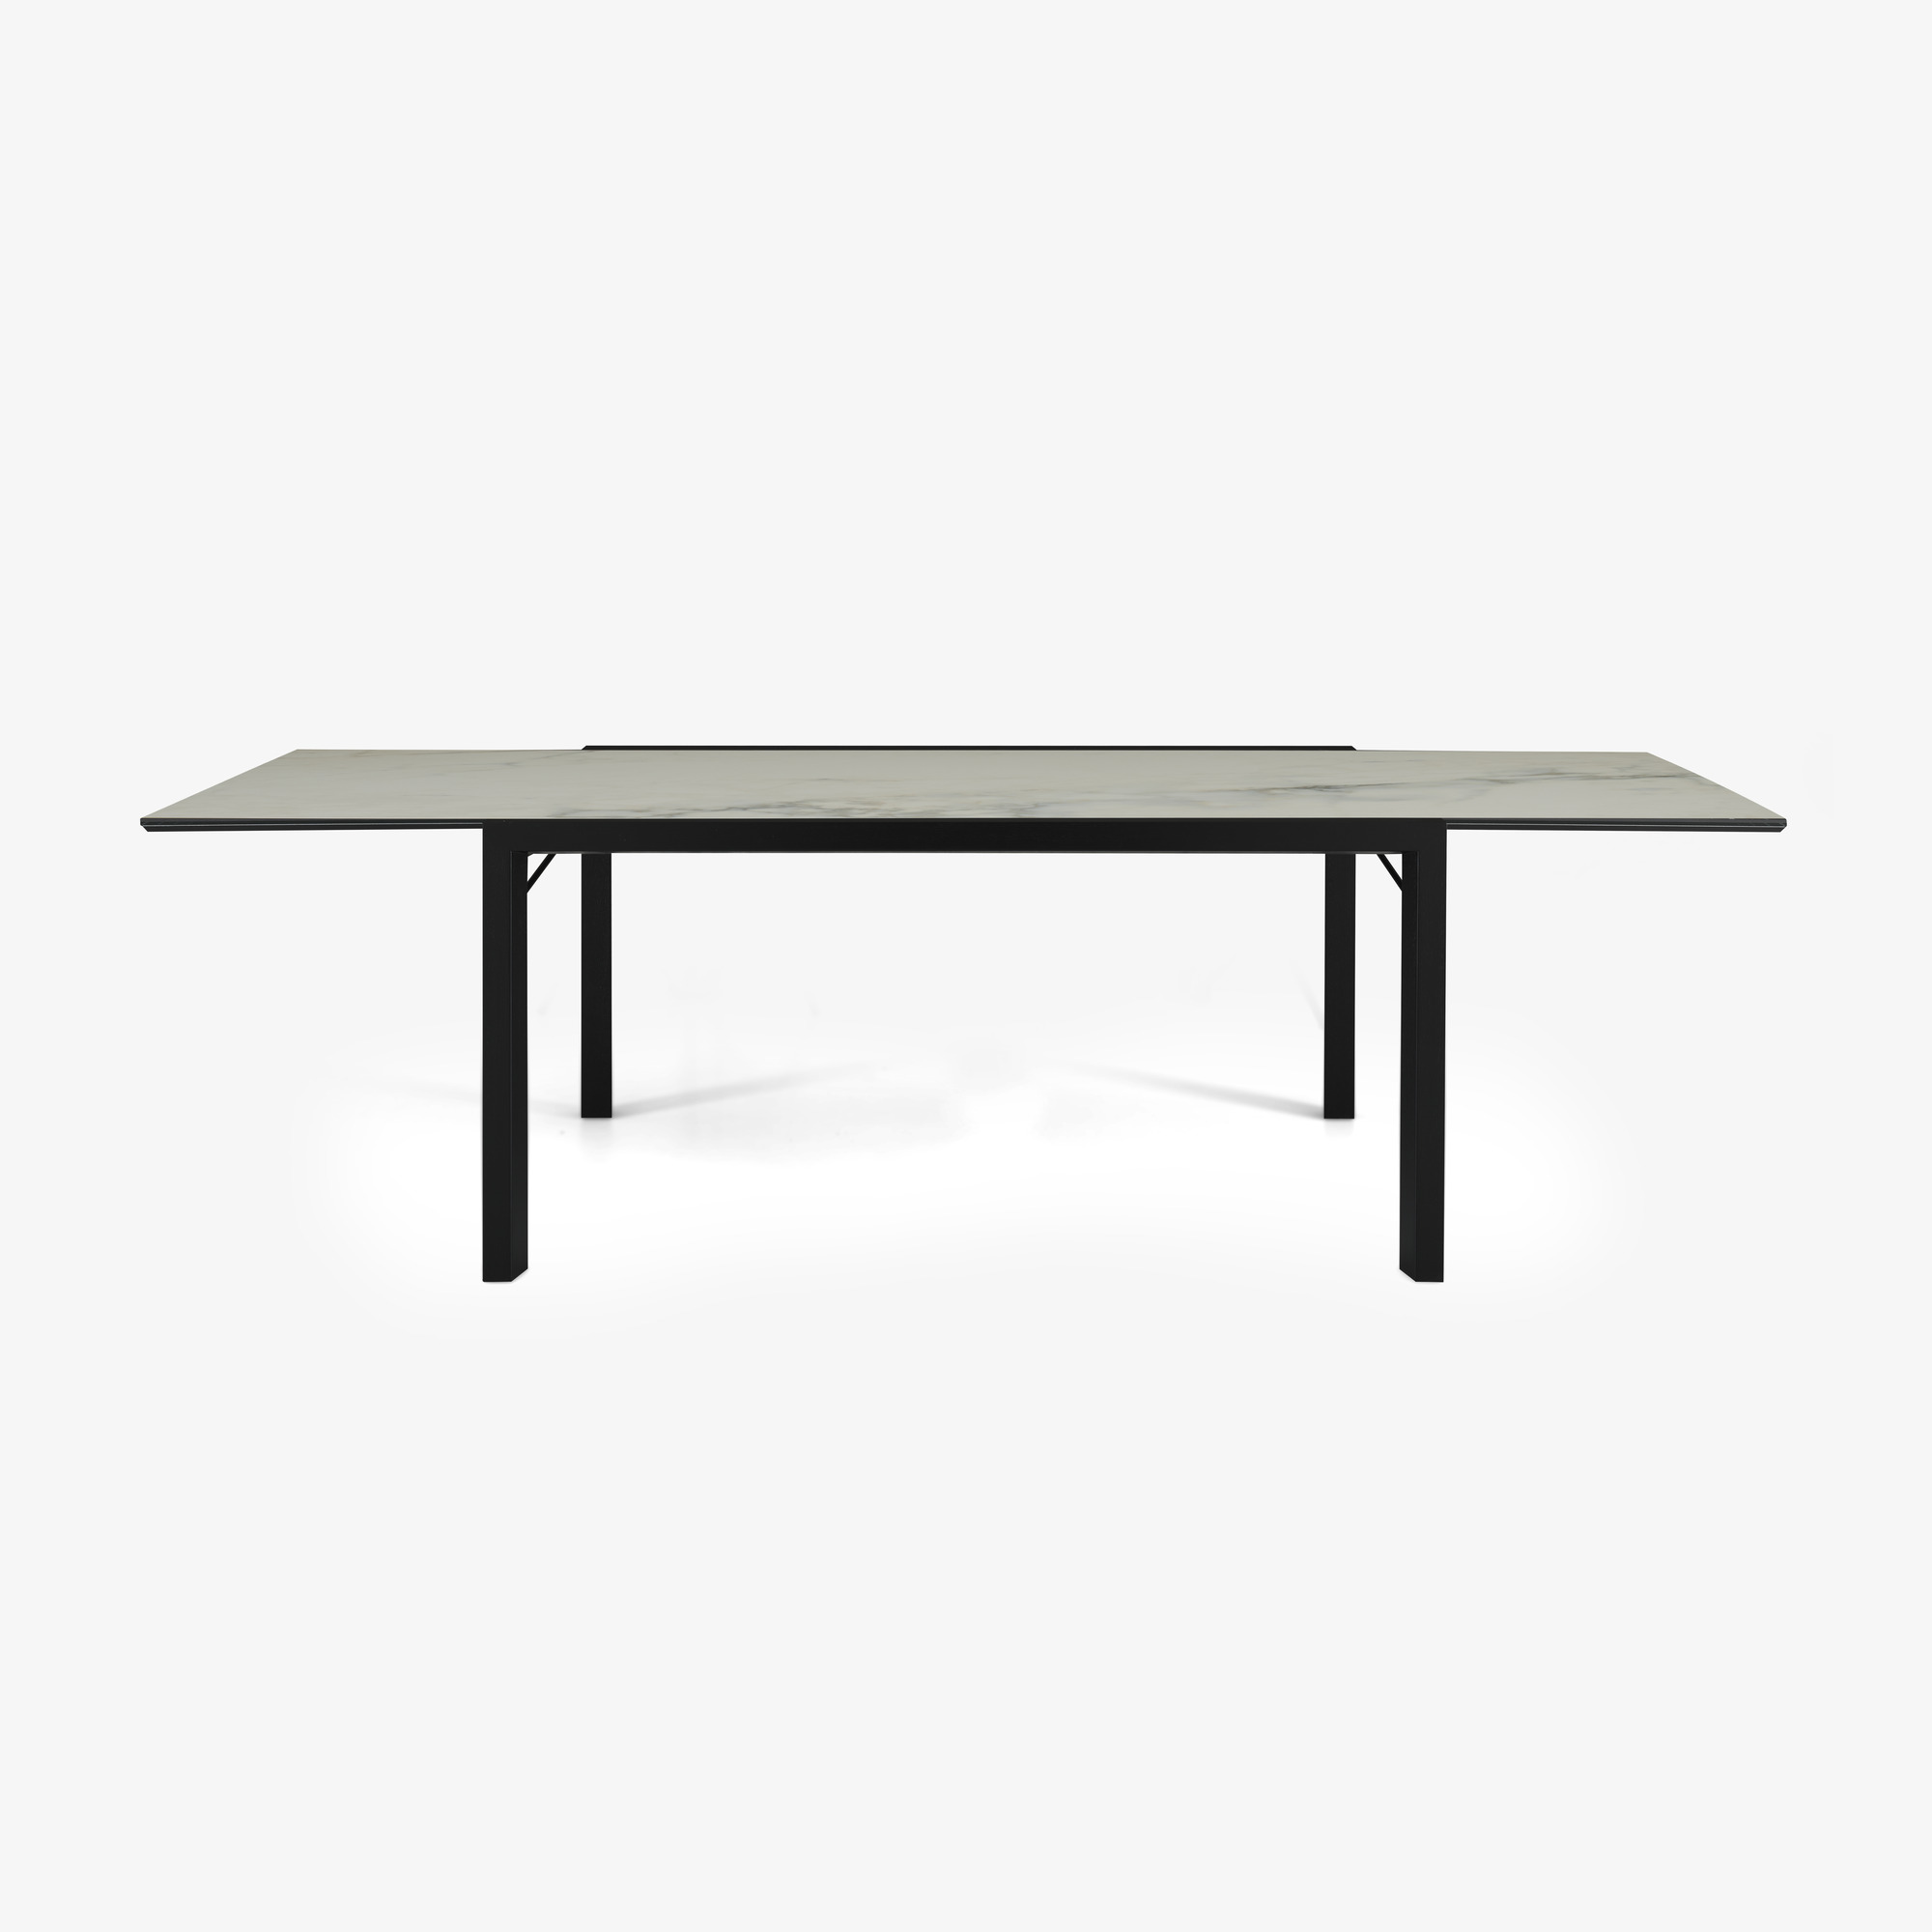 Image 餐桌 桌面由白色大理石效果的太空瓷制成 黑色白蜡木底座 4